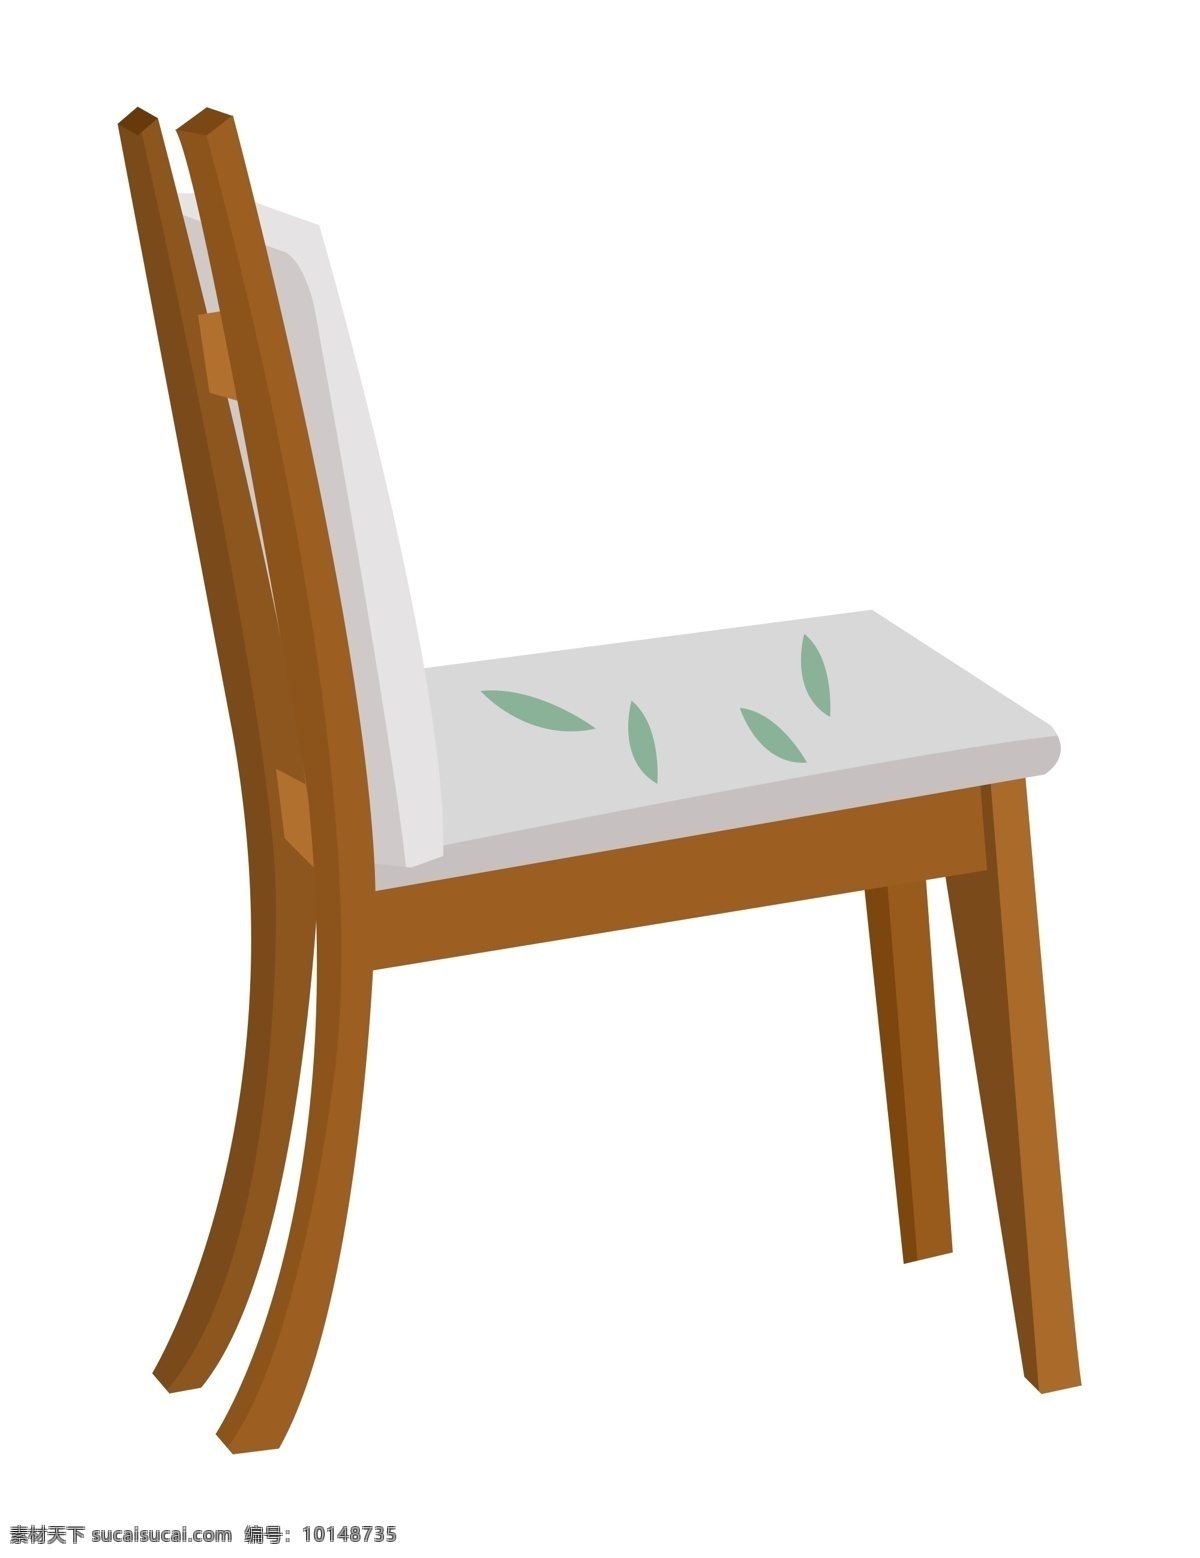 手绘 家具 餐厅 椅子 插画 绿色的椅子 木制品家具 卡通插画 手绘家具插画 白色的坐垫 精美的家具